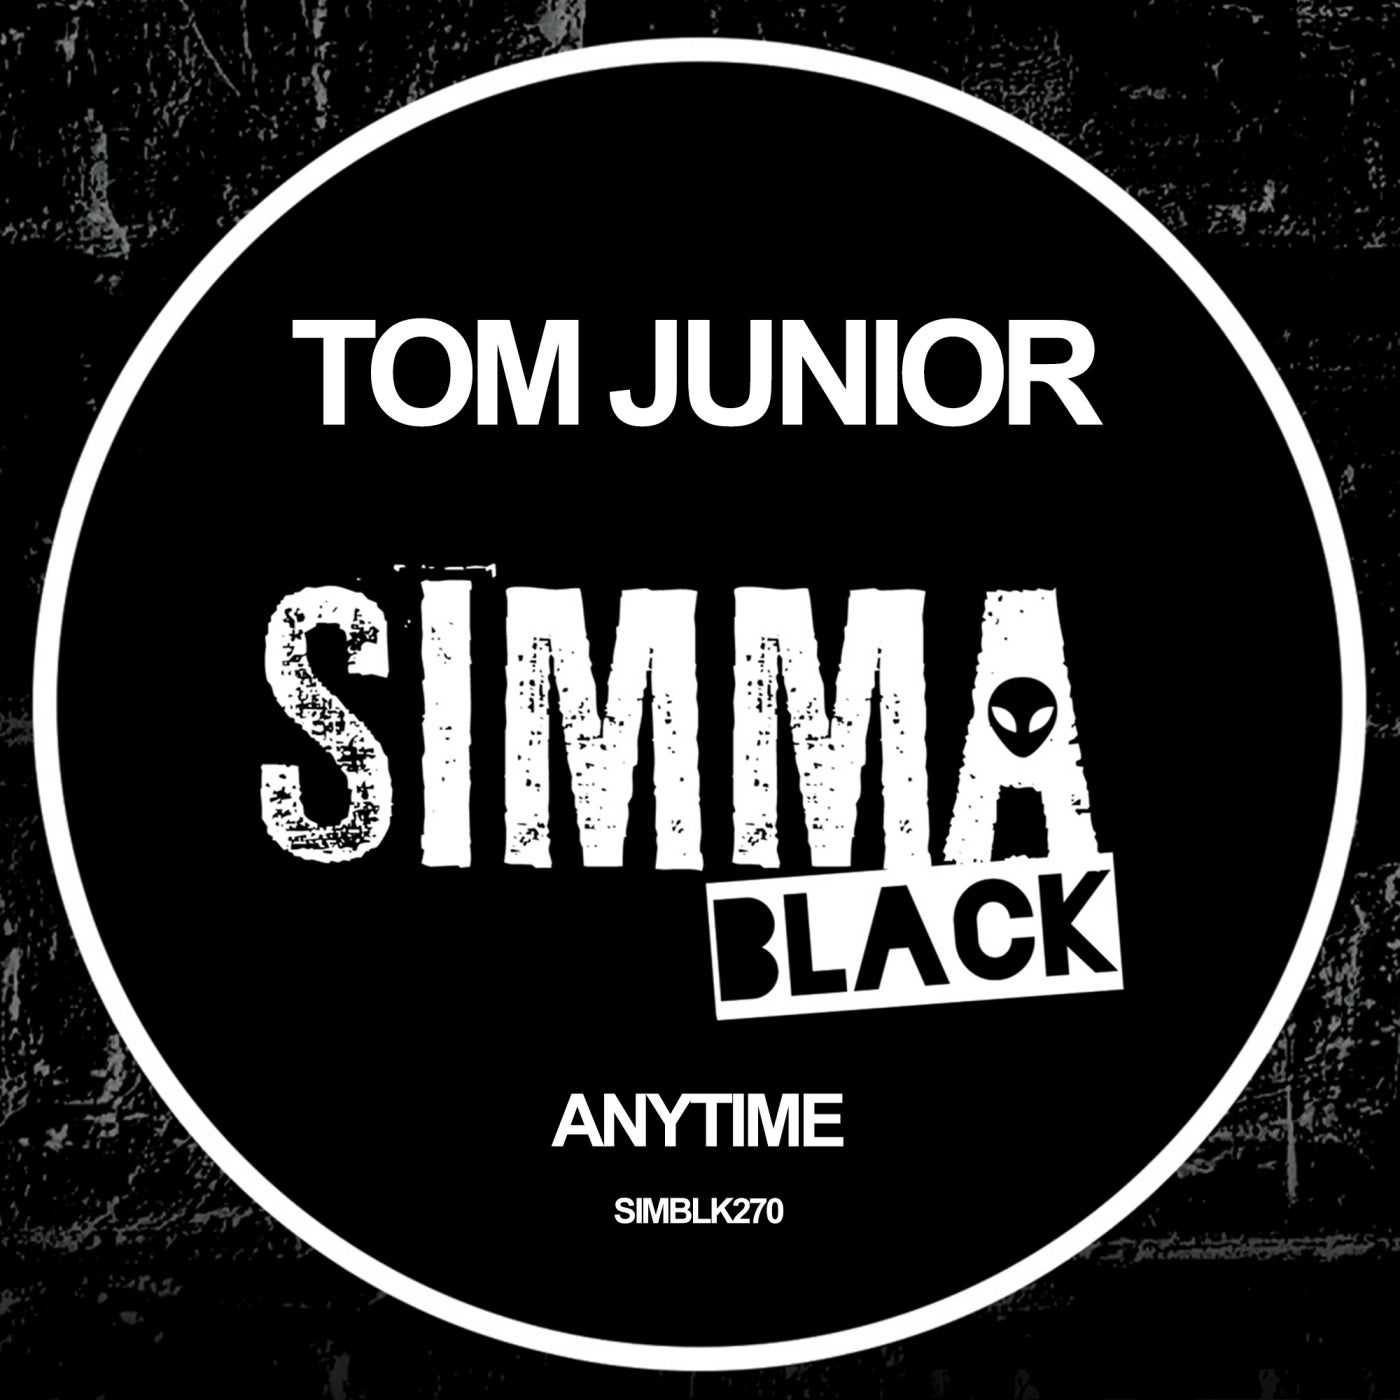 Tom Junior – Anytime [SIMBLK270]